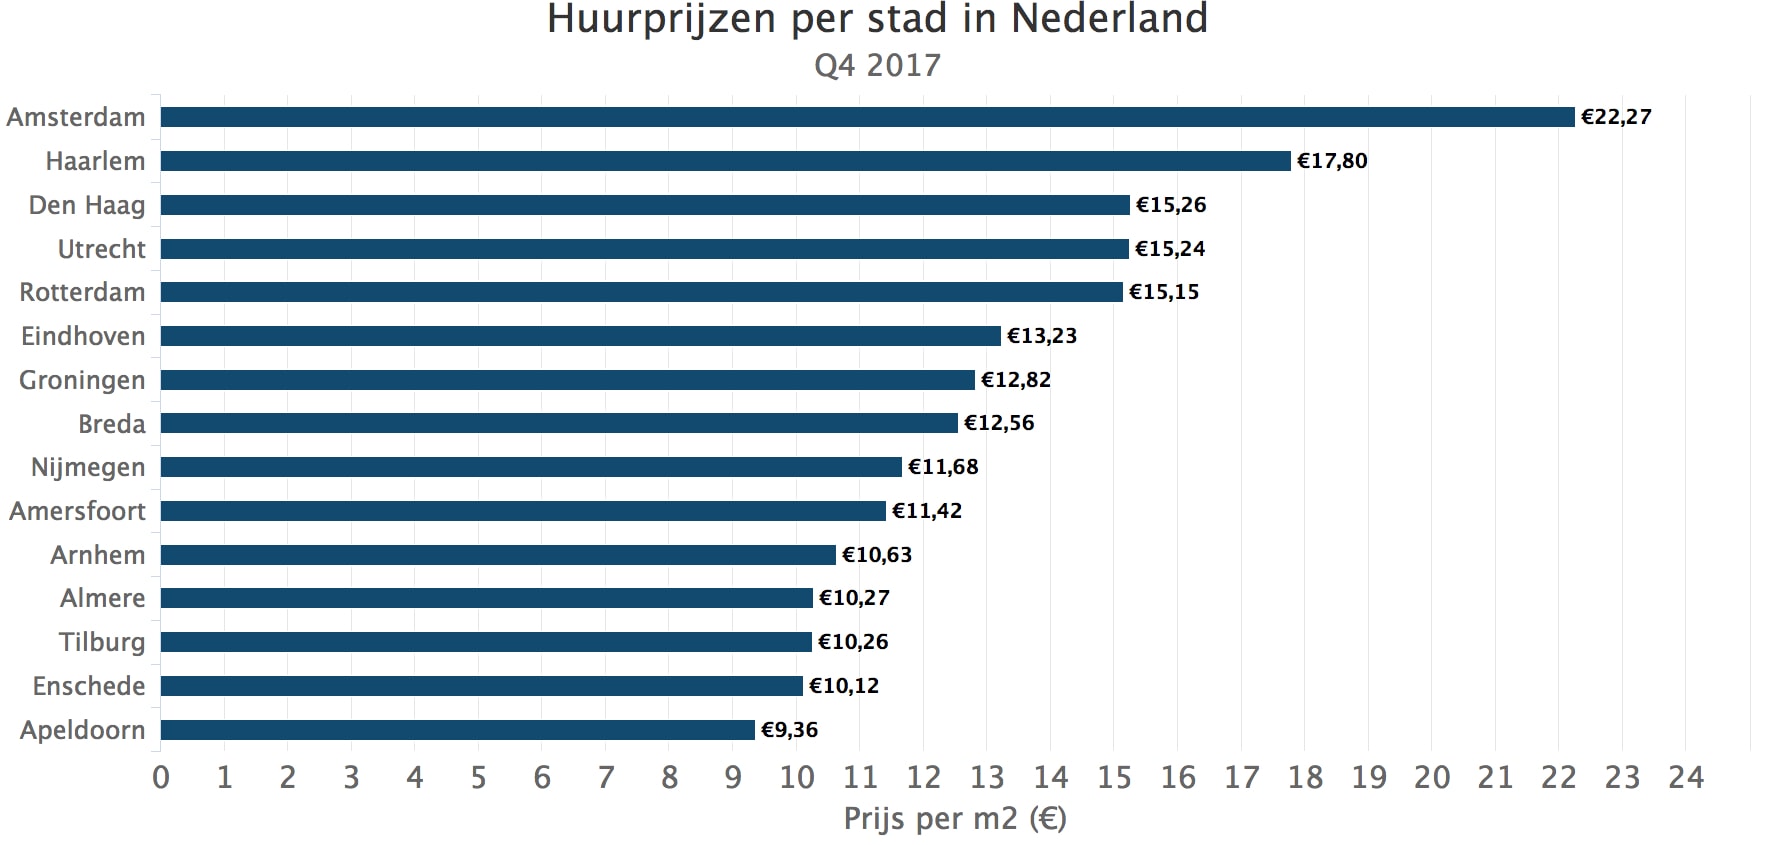 Huurprijzen Per Stad In Nederland